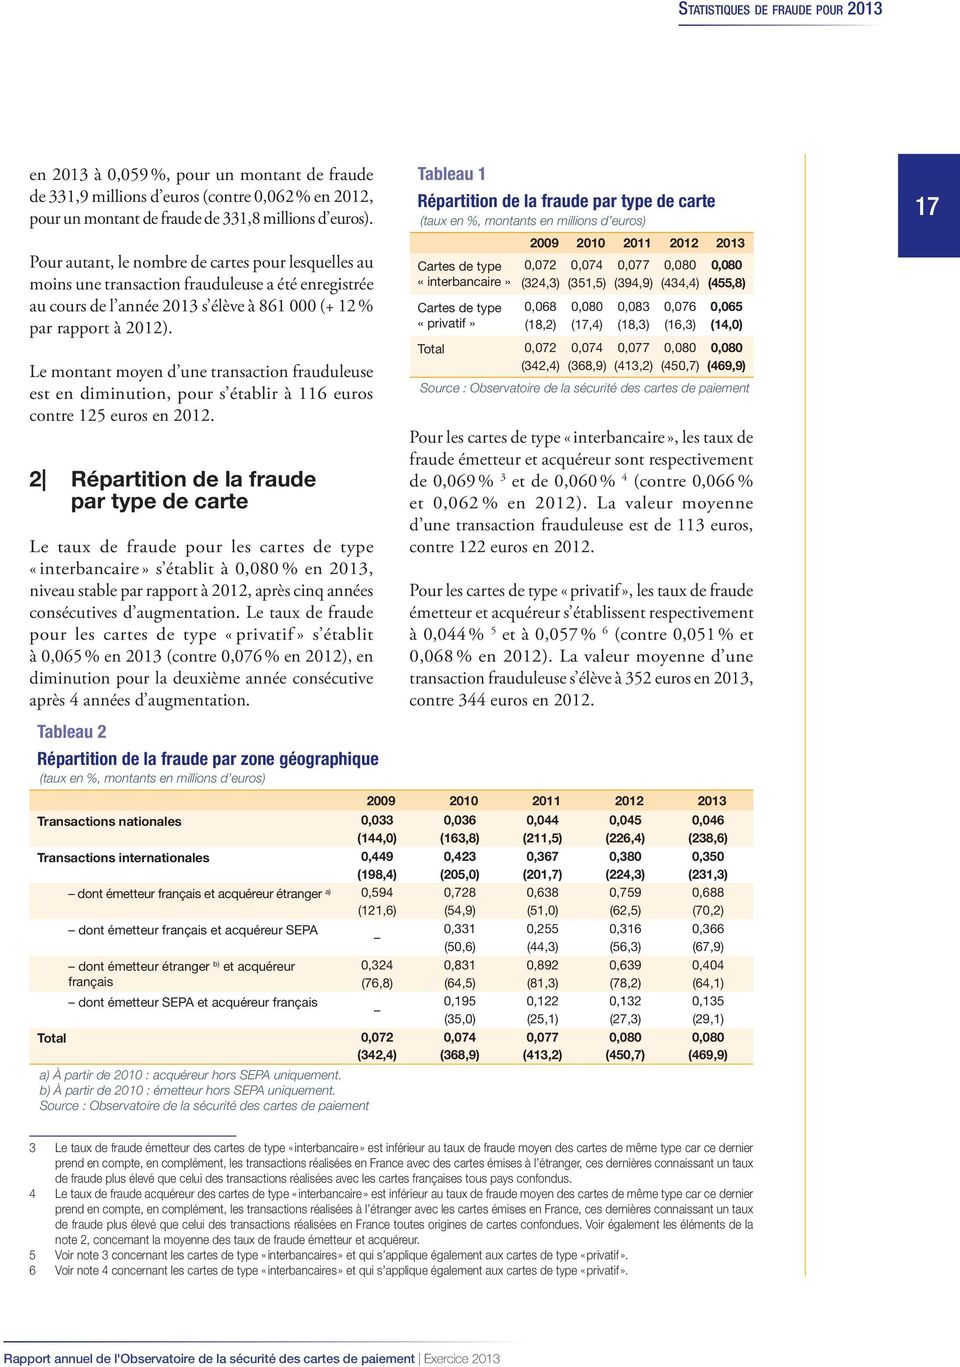 Le montant moyen d une transaction frauduleuse est en diminution, pour s établir à 116 euros contre 125 euros en 2012.